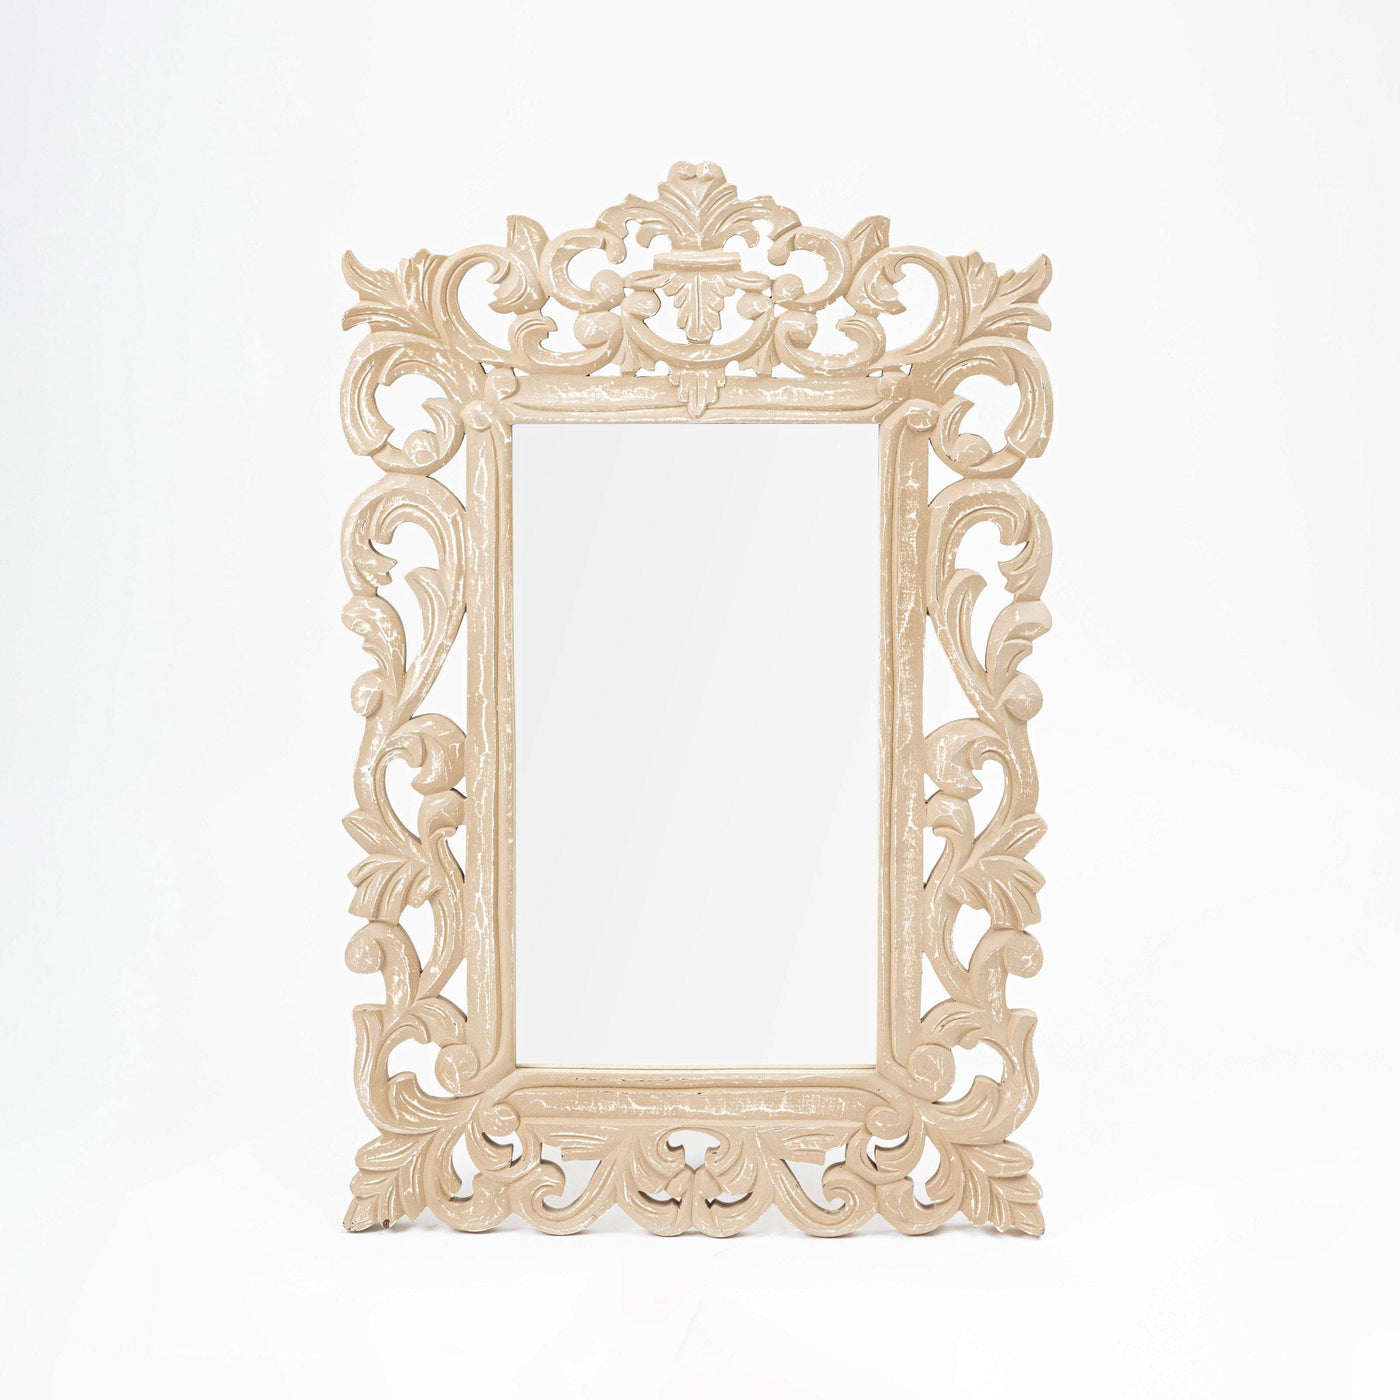 Jolie Rectangular Wooden Mirror, Light Brown, 60x90 cm Mirrors sazy.com